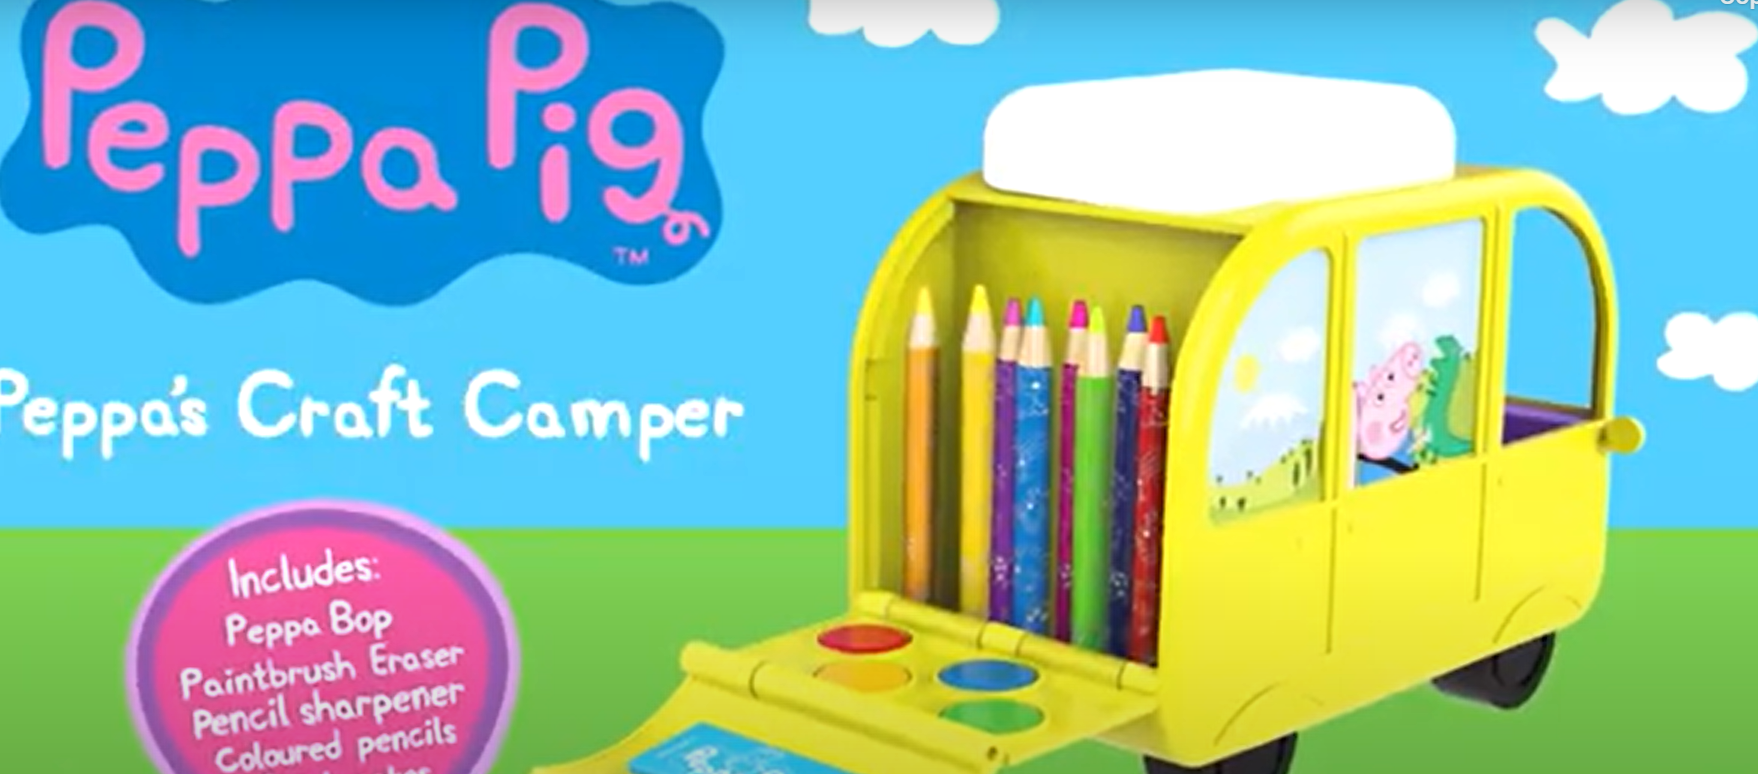 Peppa Pig Craft Camper